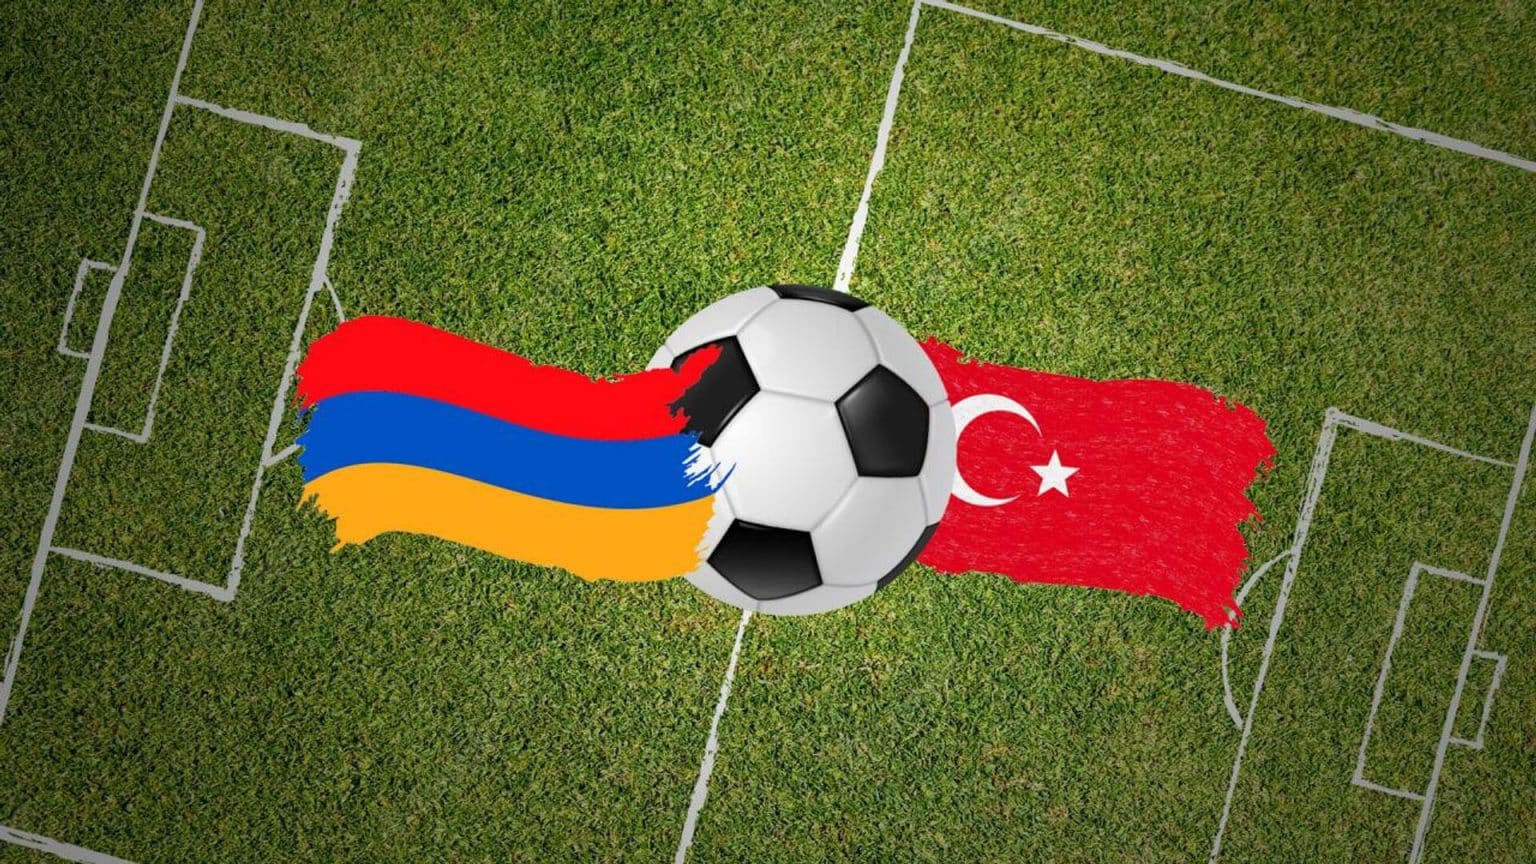 Թուրքիա-Հայաստան հանդիպմանն Ադրբեջանի դրոշներով մուտքը մարզադաշտ արգելվել է՝ հարուցելով տեղի ադրբեջանցիների զայրույթը